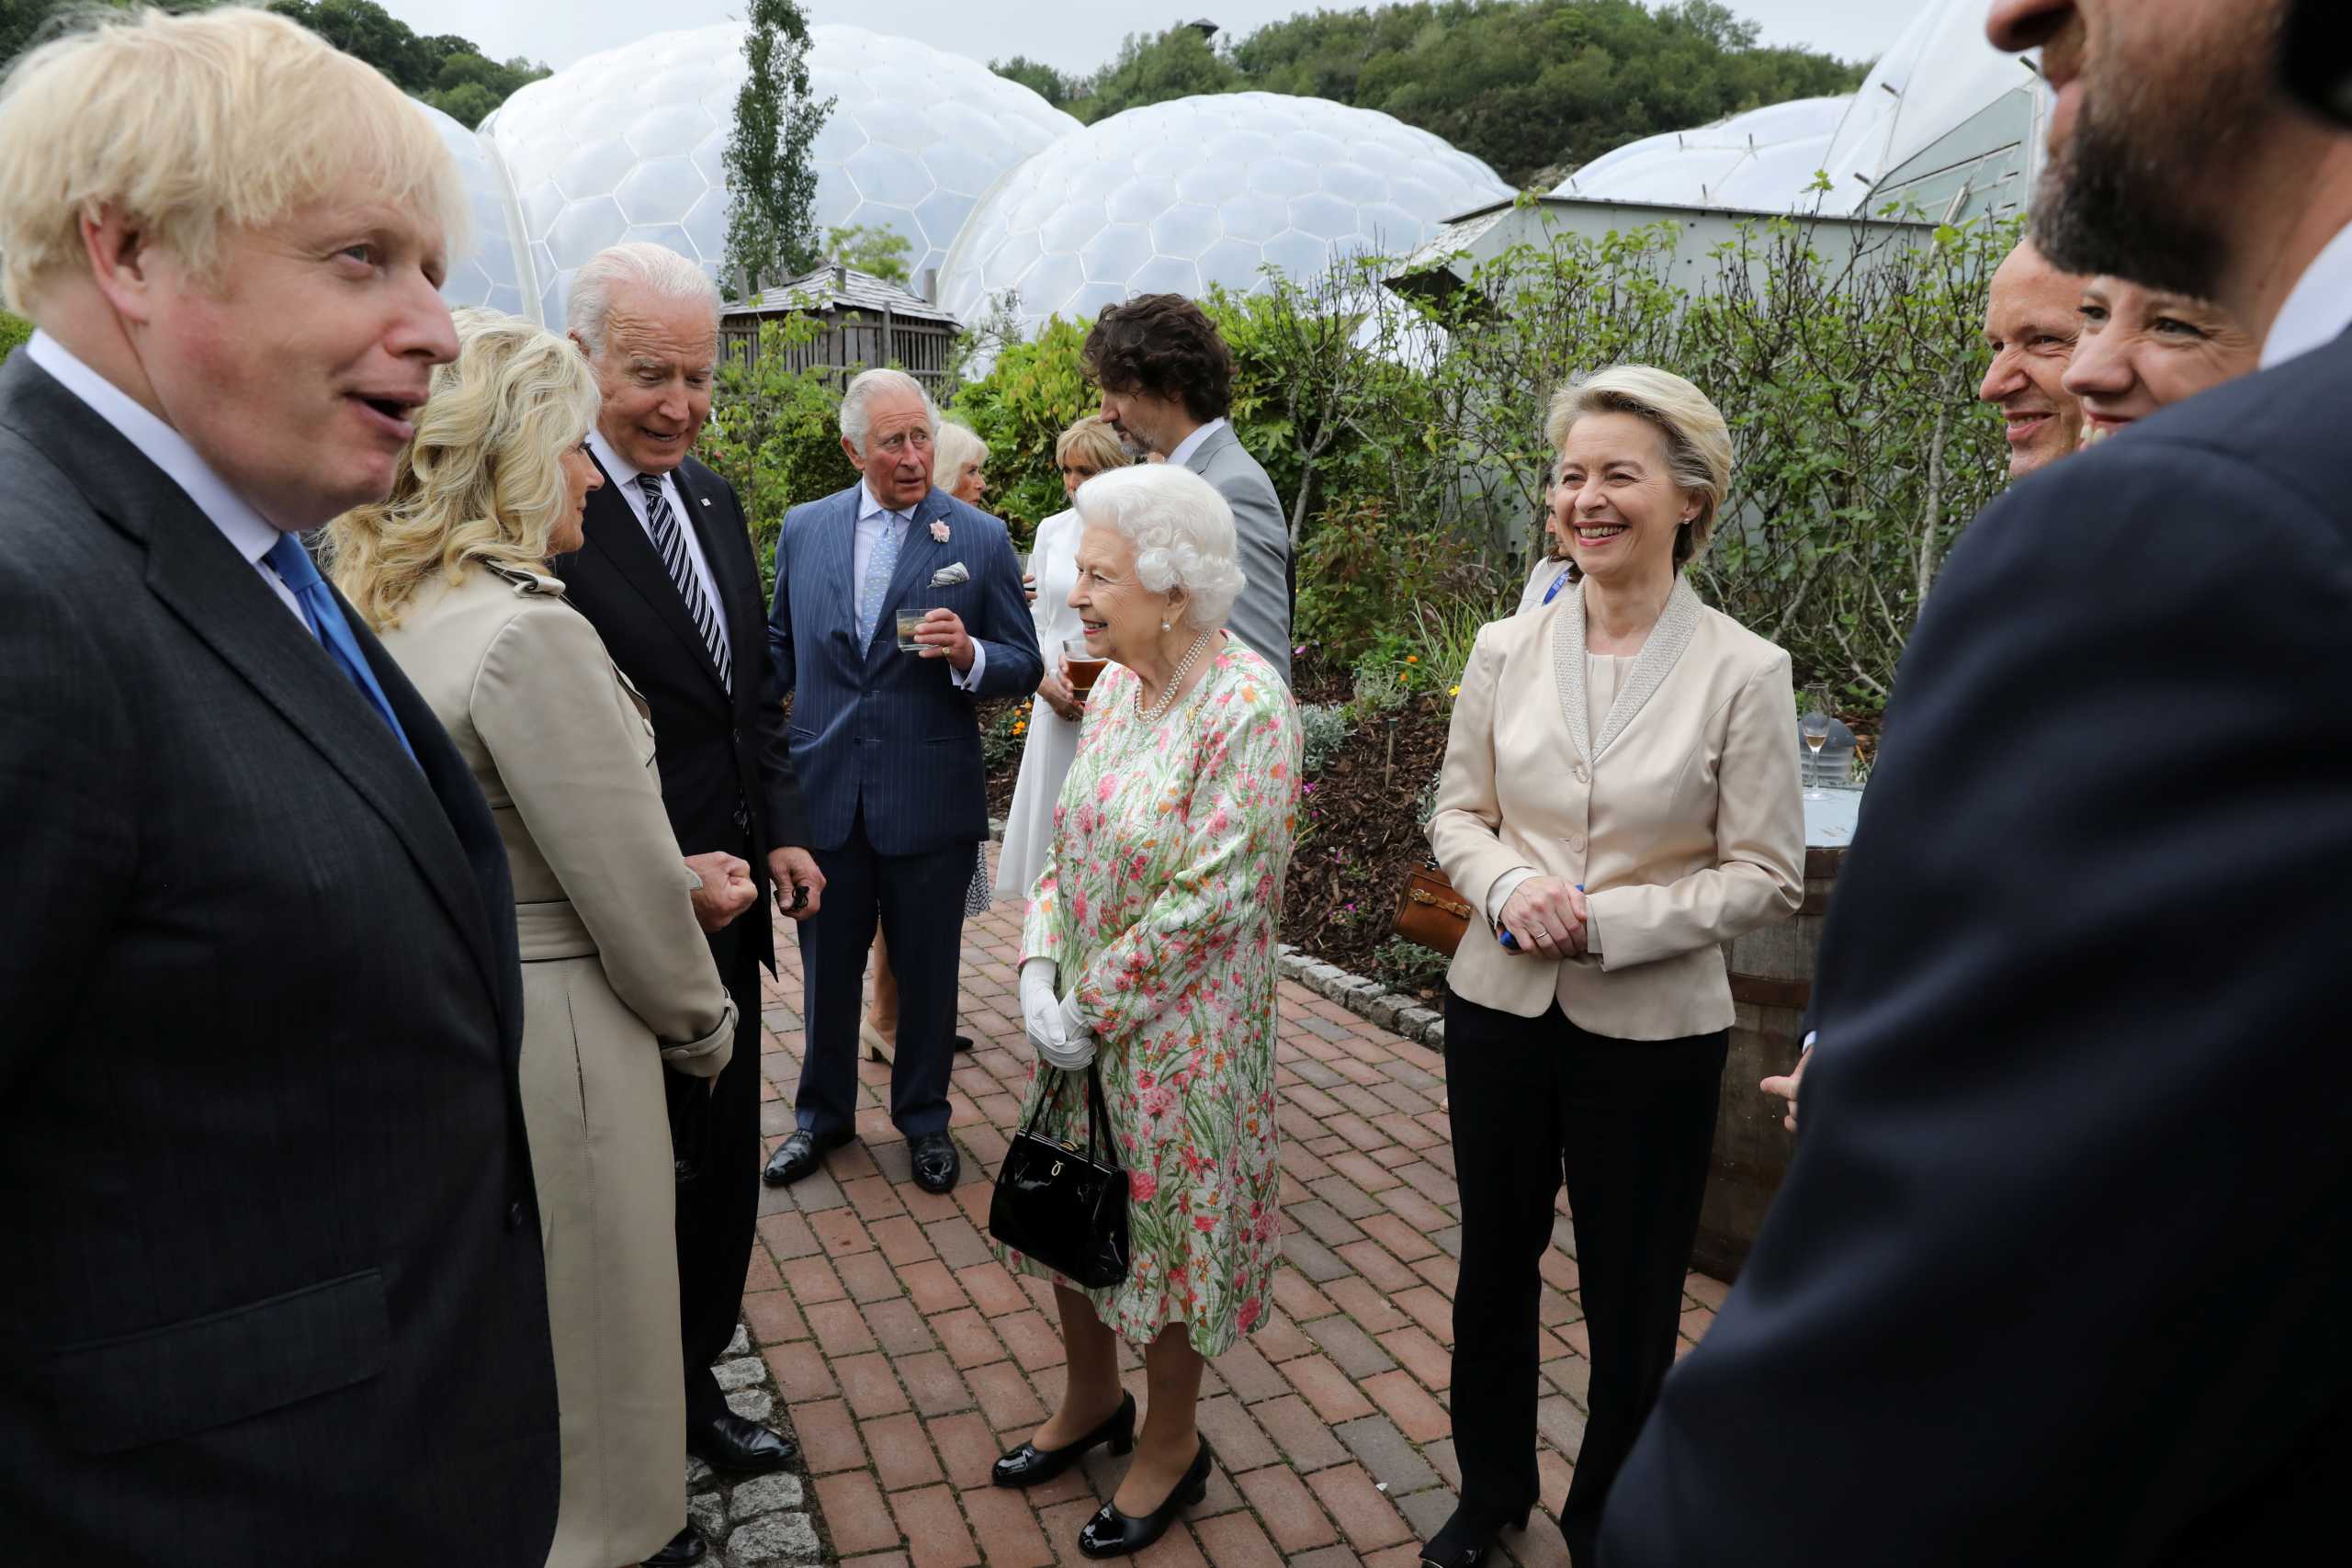 Η βασίλισσα Ελισάβετ, ο πρίγκιπας Κάρολος και ο πρίγκιπας Ουίλιαμ στη Σύνοδο για το κλίμα